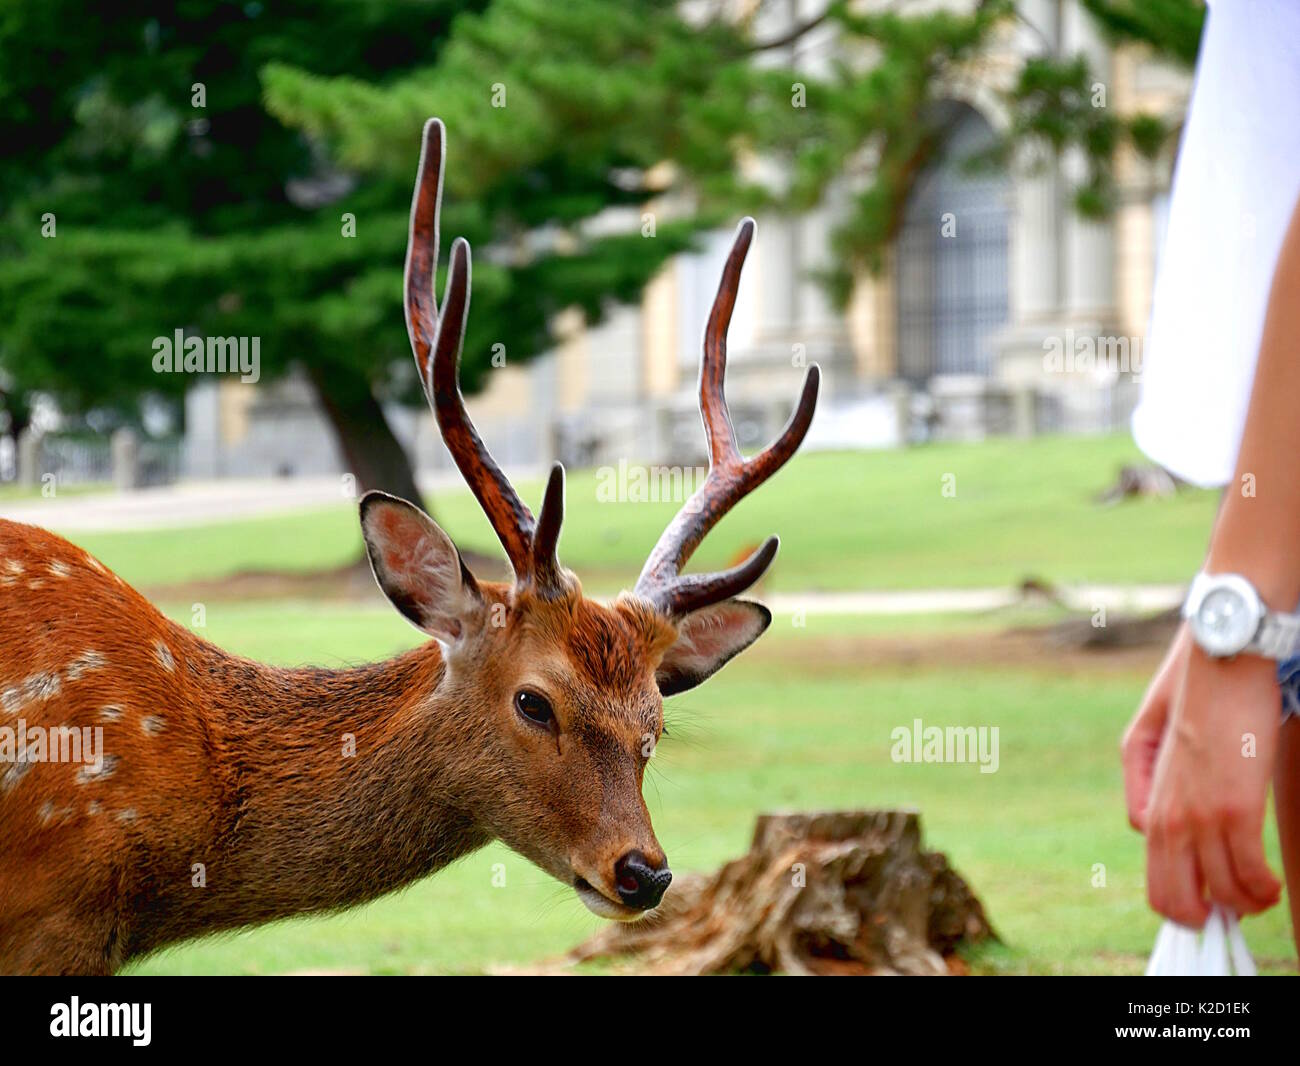 Sacred Nara deer in Nara Park, Japan Stock Photo